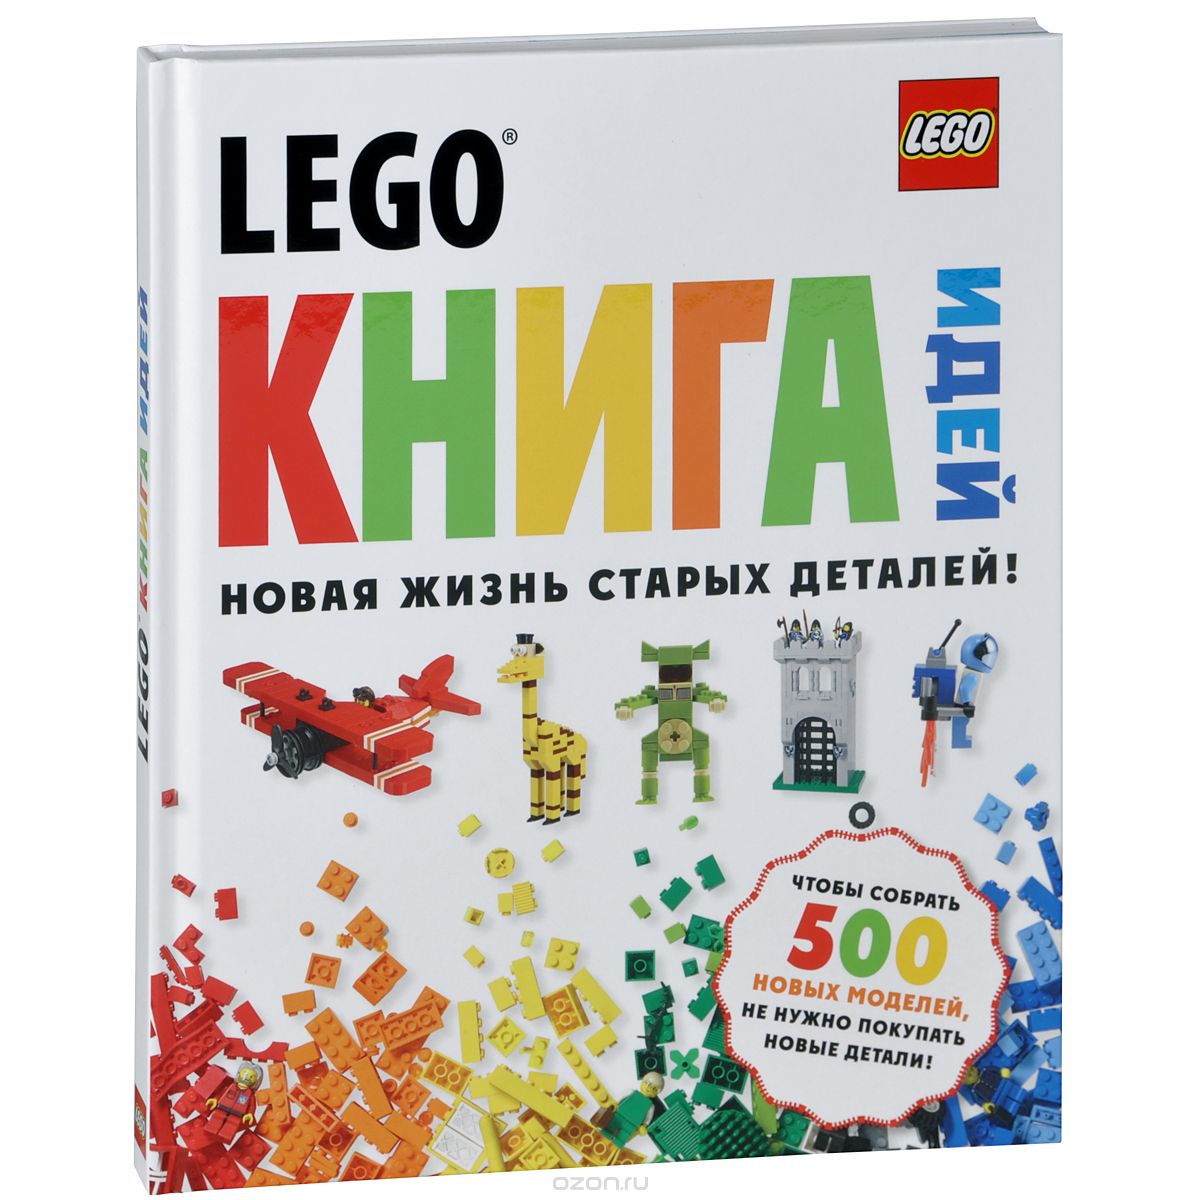 LEGO. Книга идей